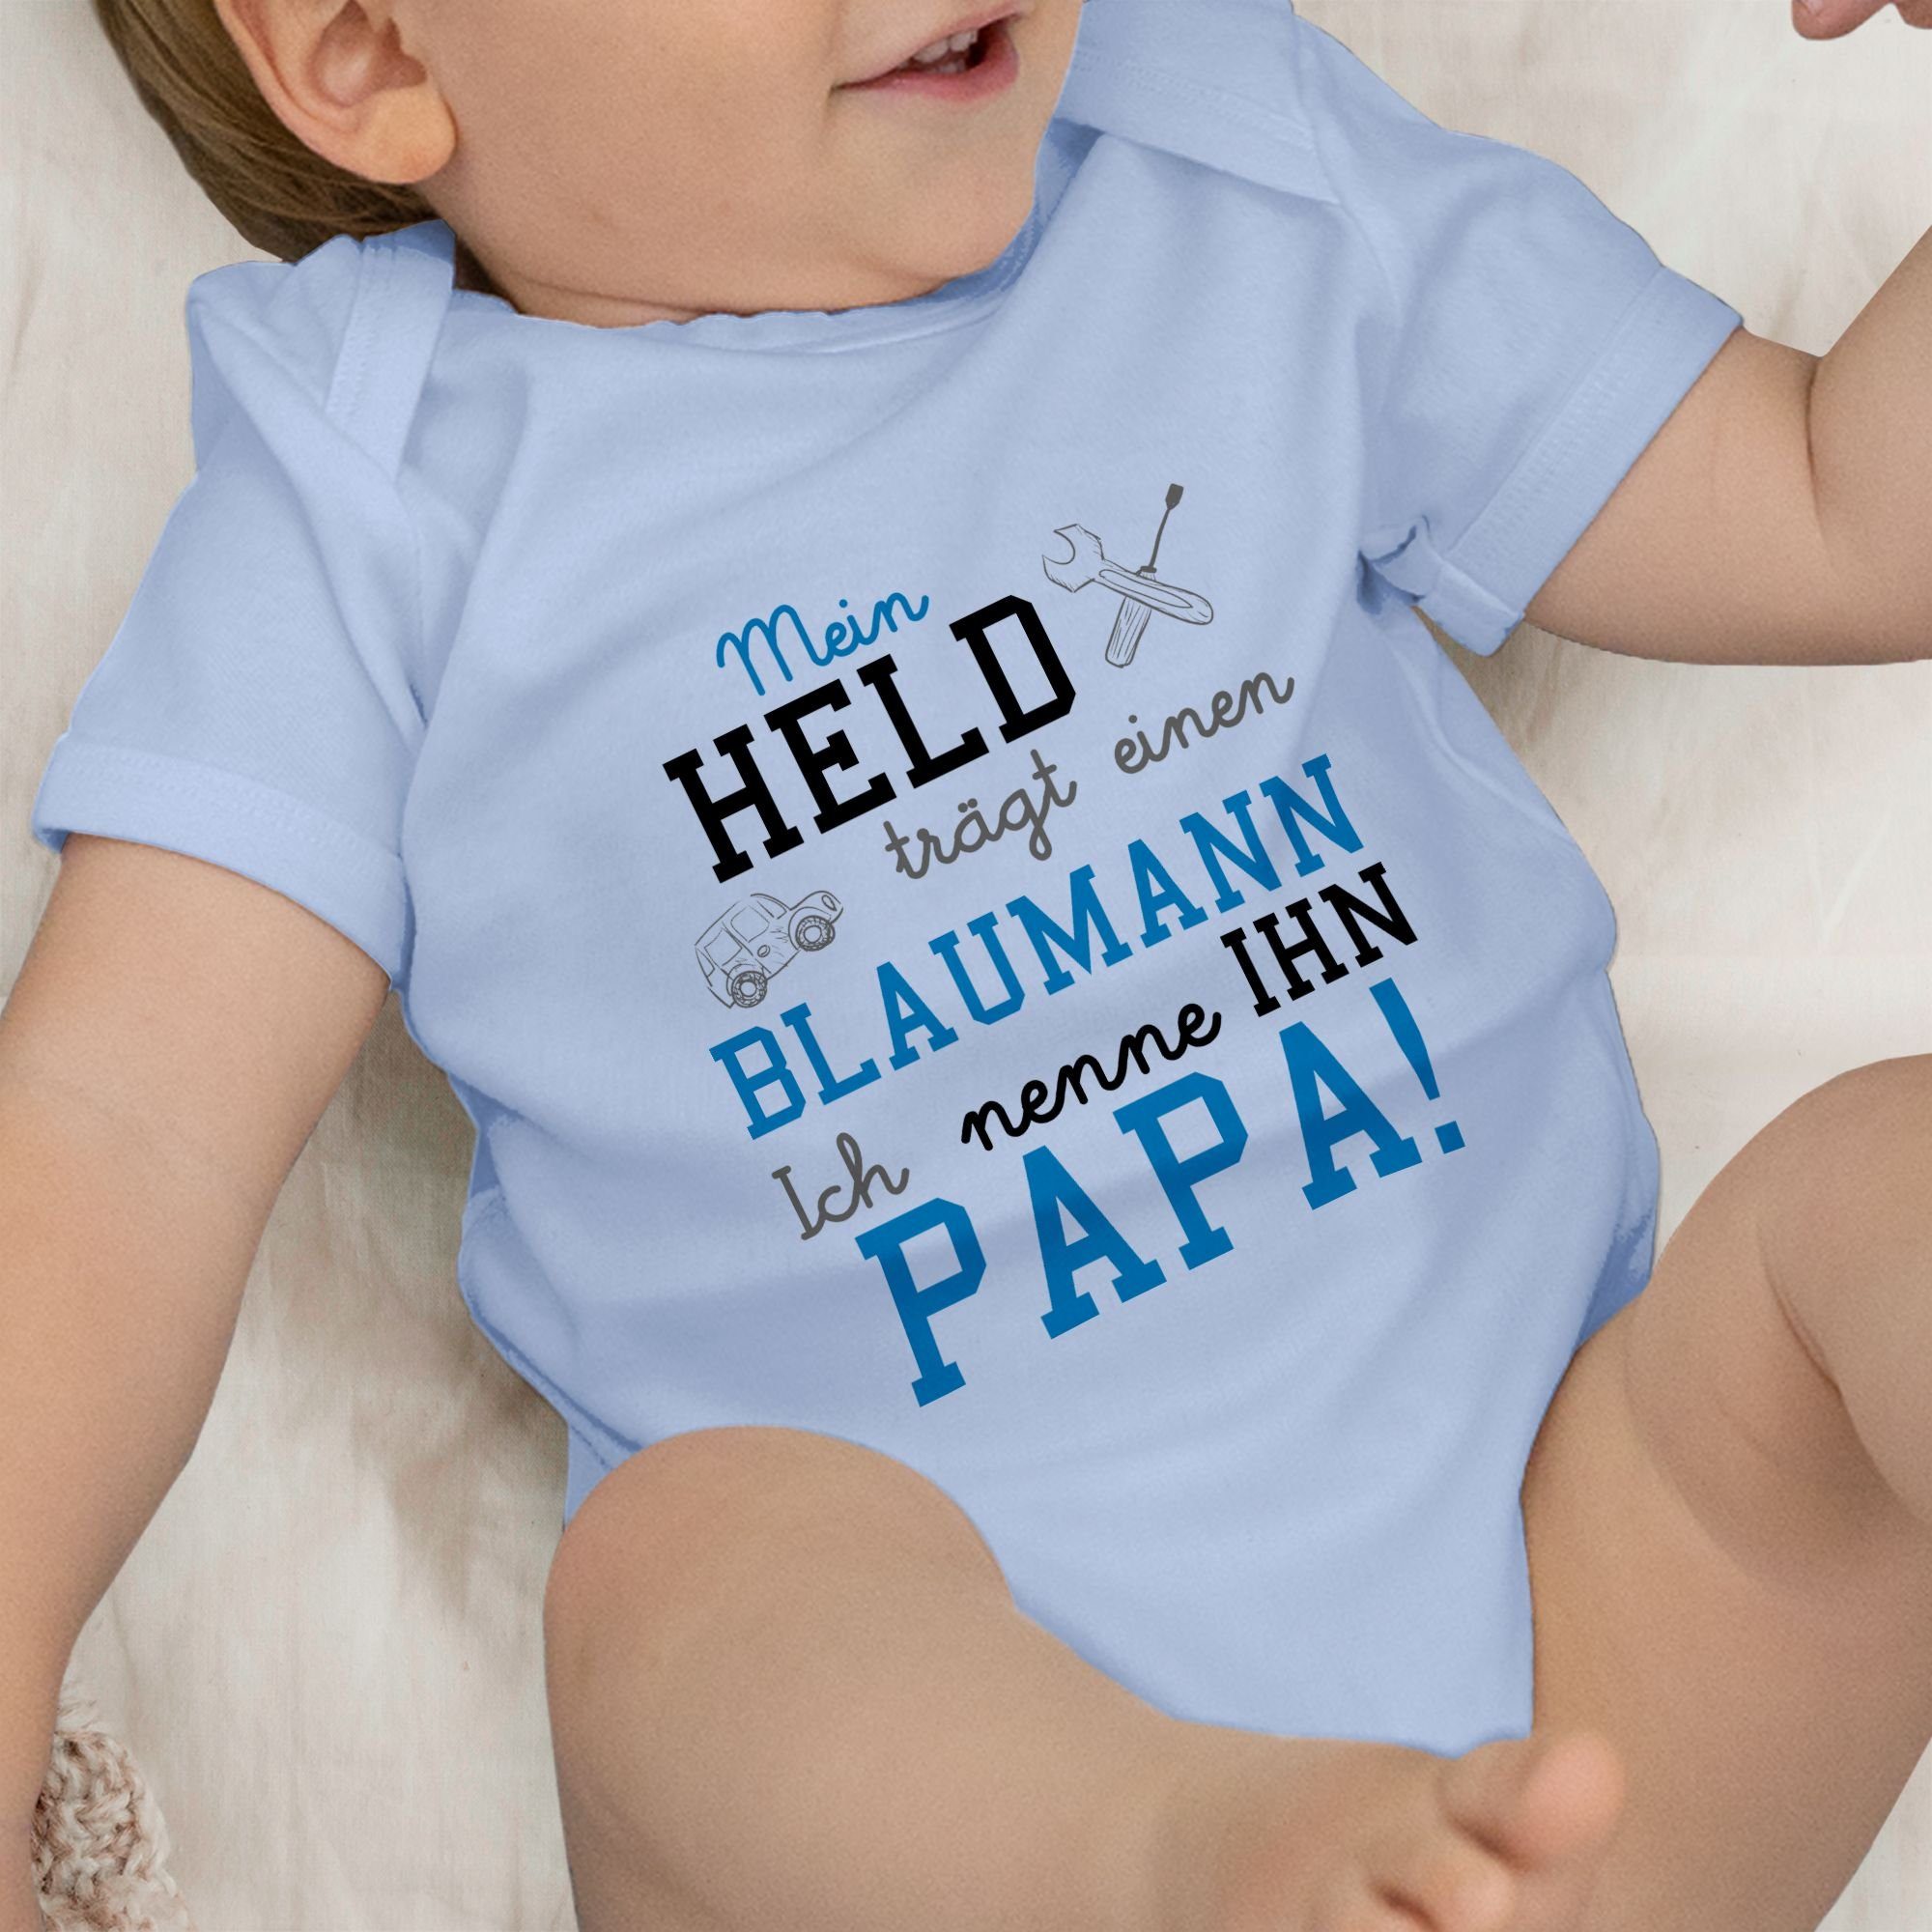 Baby Mein trägt Blaumann einen Held Sprüche 2 Babyblau Shirtbody Shirtracer